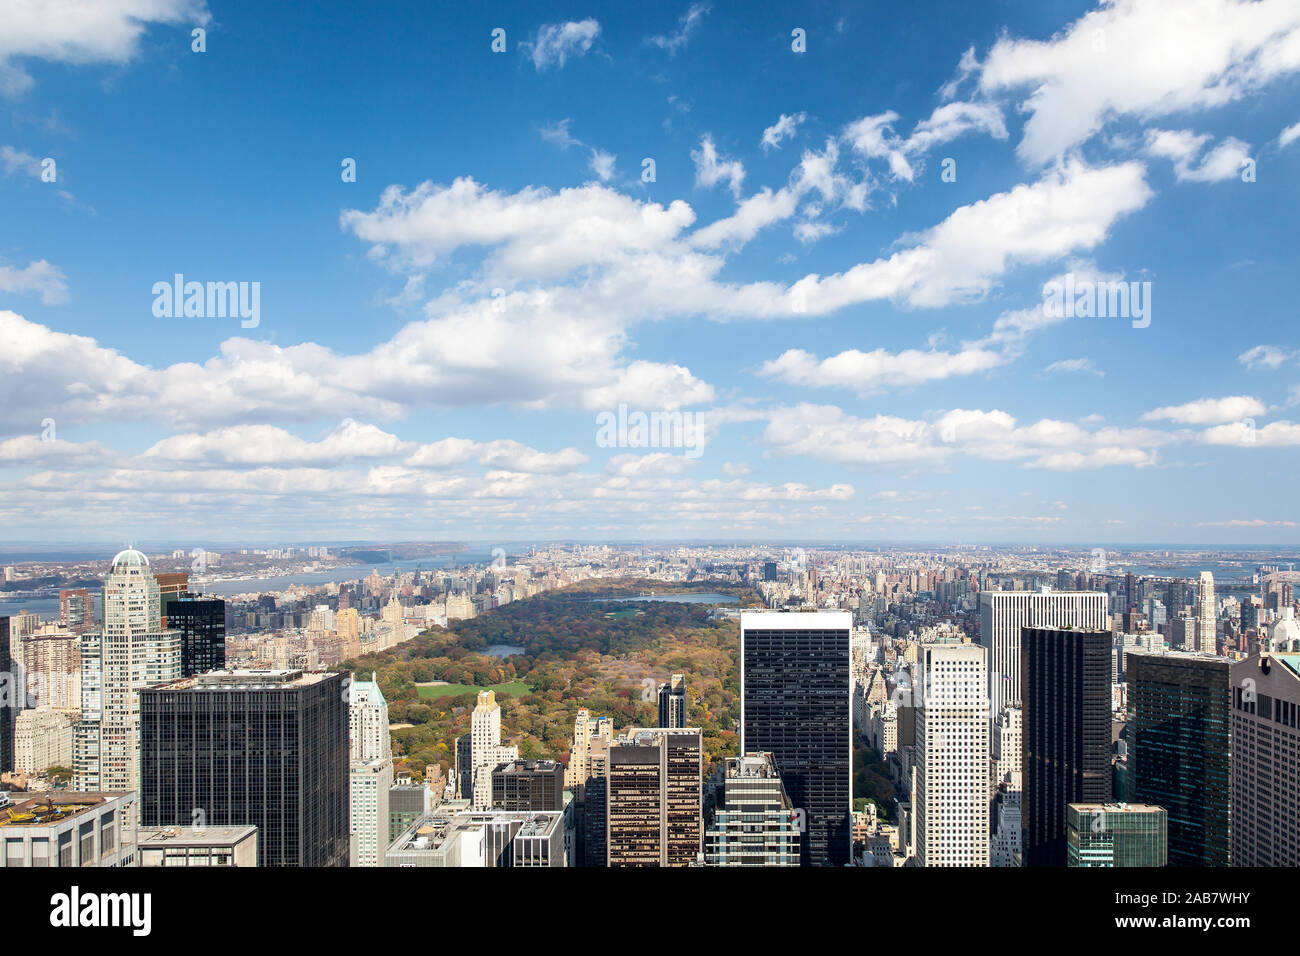 Ein Blick auf die Stadt New York in Amerika Stock Photo